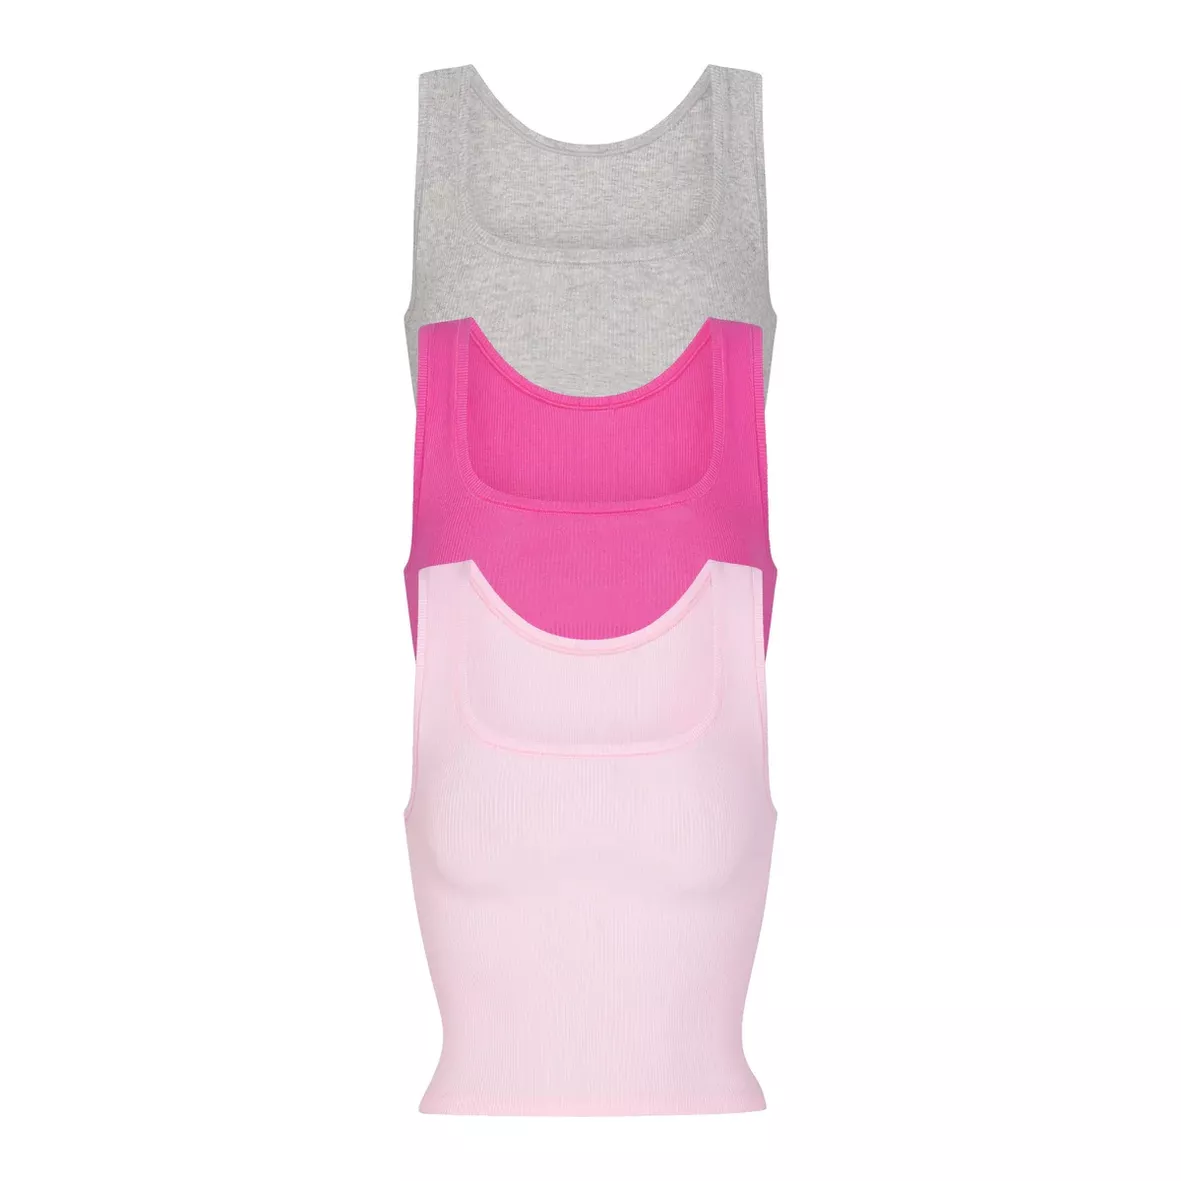 Bubble gum pink SKIMS set - Tops & blouses